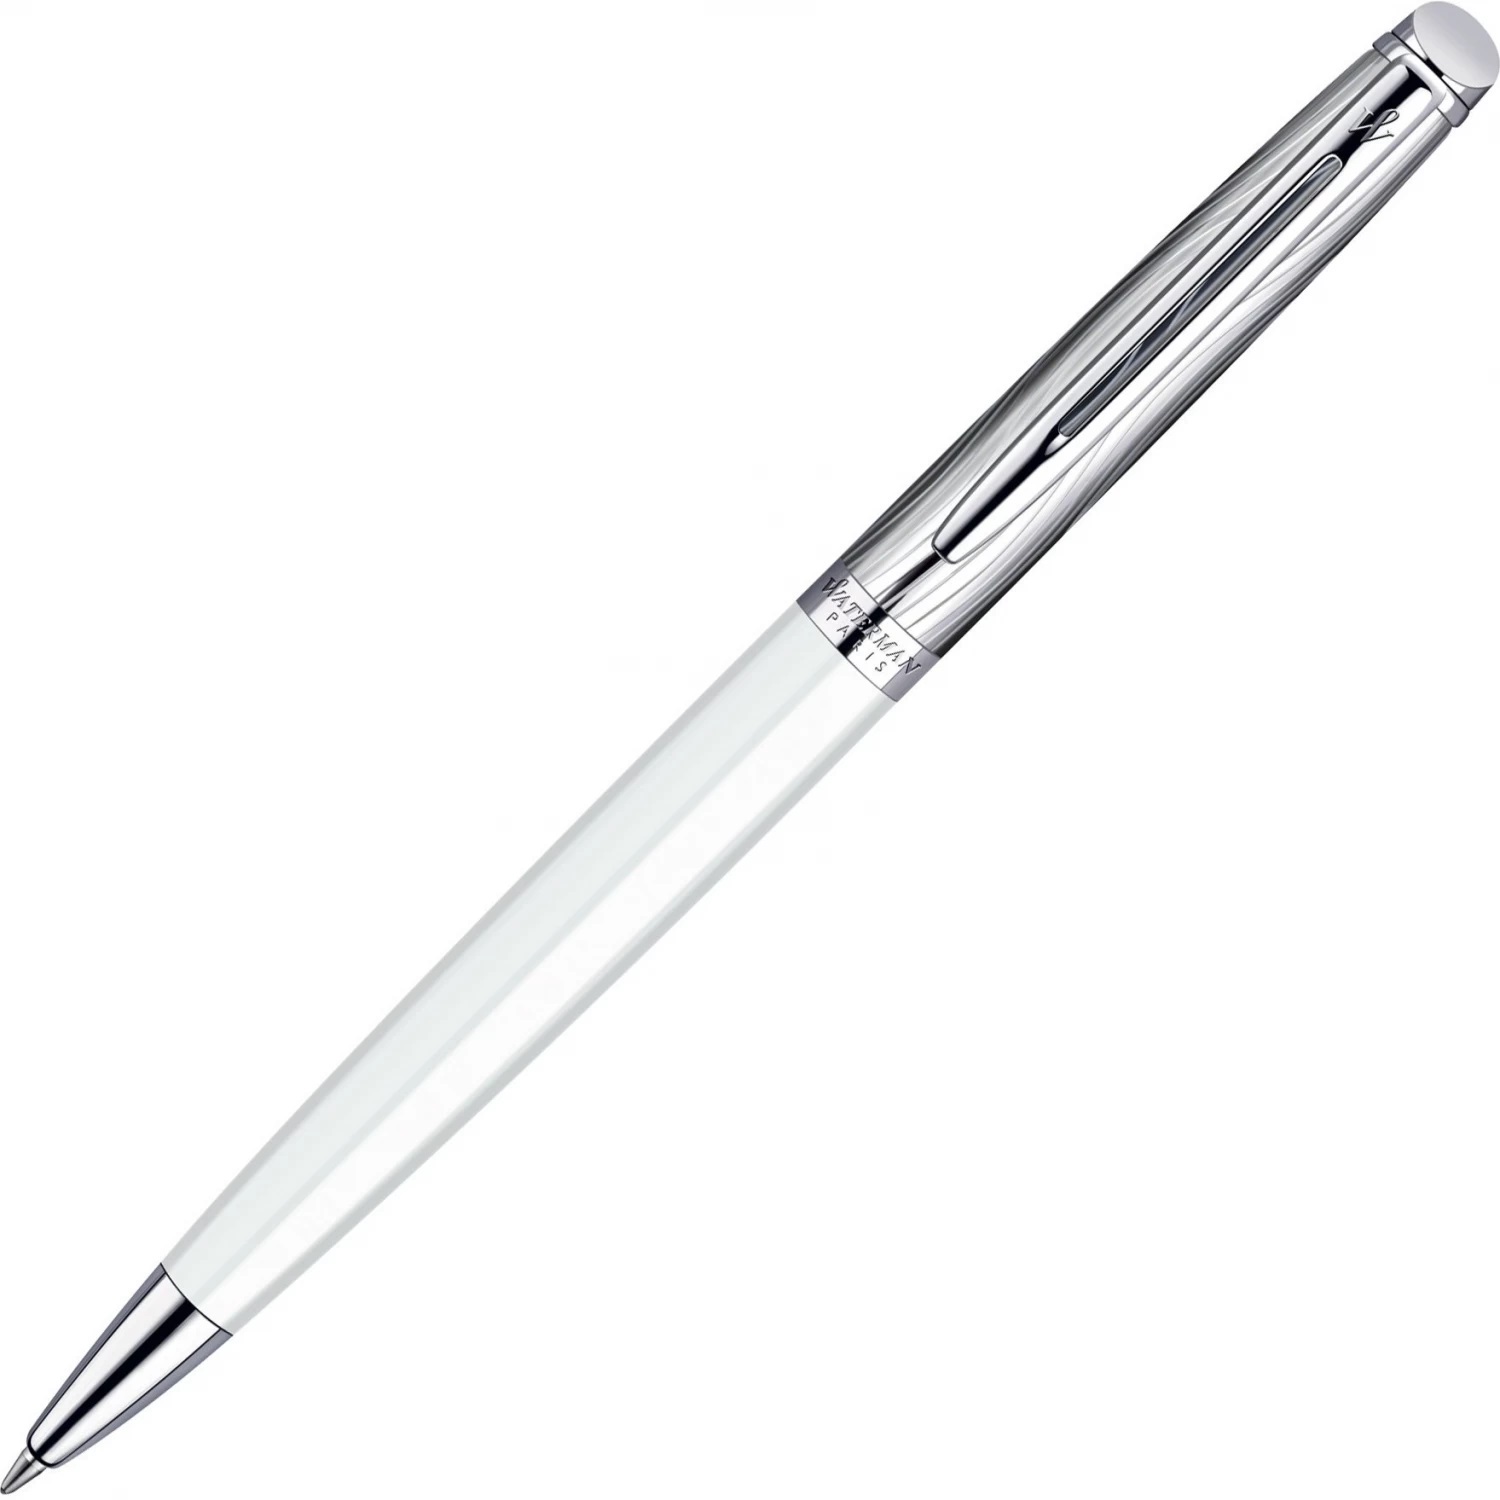 Шариковая ручка Waterman Hemisphere S0921310 (S0921310) ручка подарочная шариковая в кожзам футляре поворотная vip корпус серебряный корпус